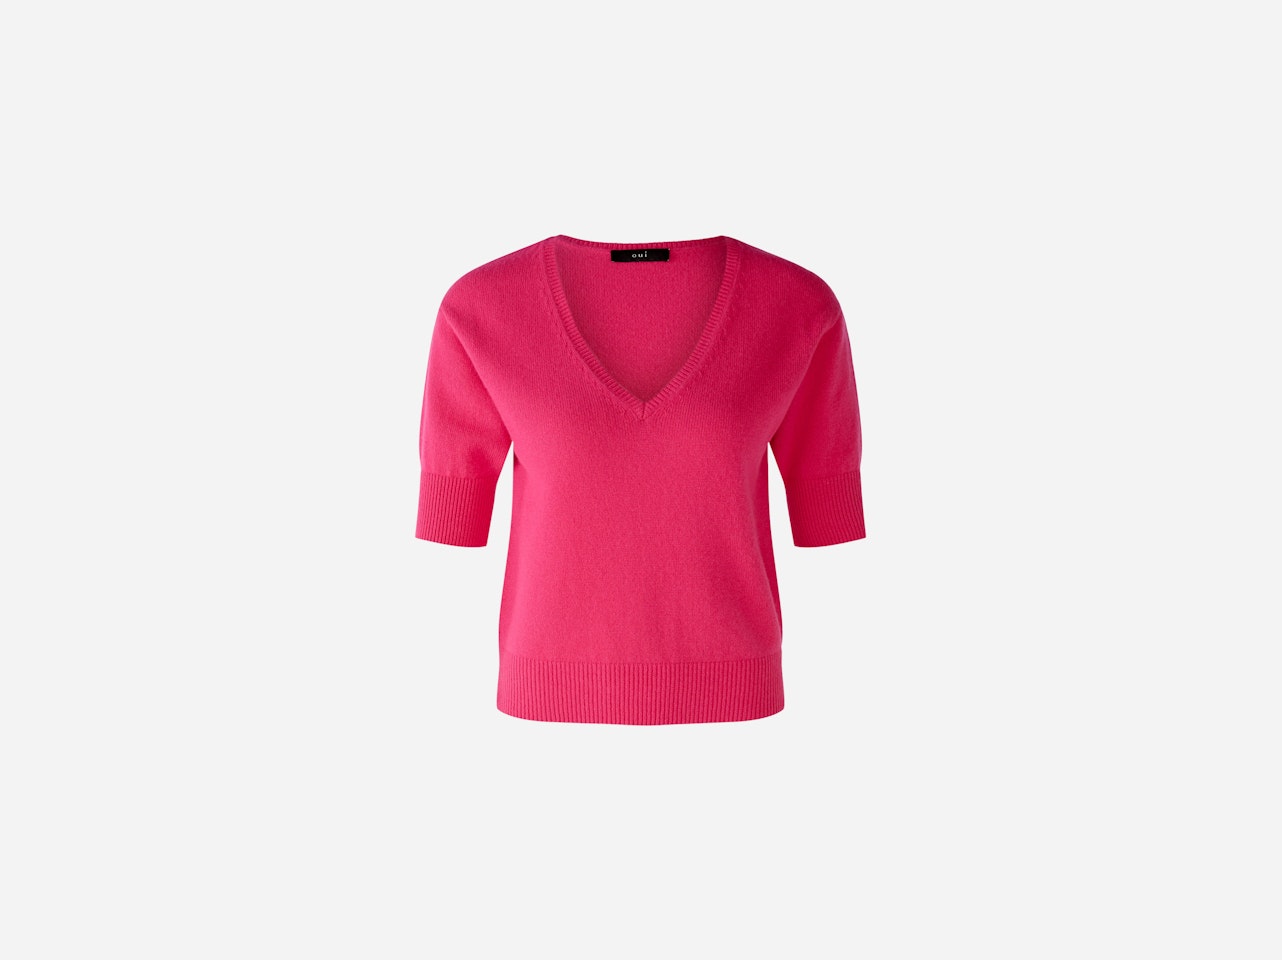 Bild 1 von Jumper wool blend in dark pink | Oui